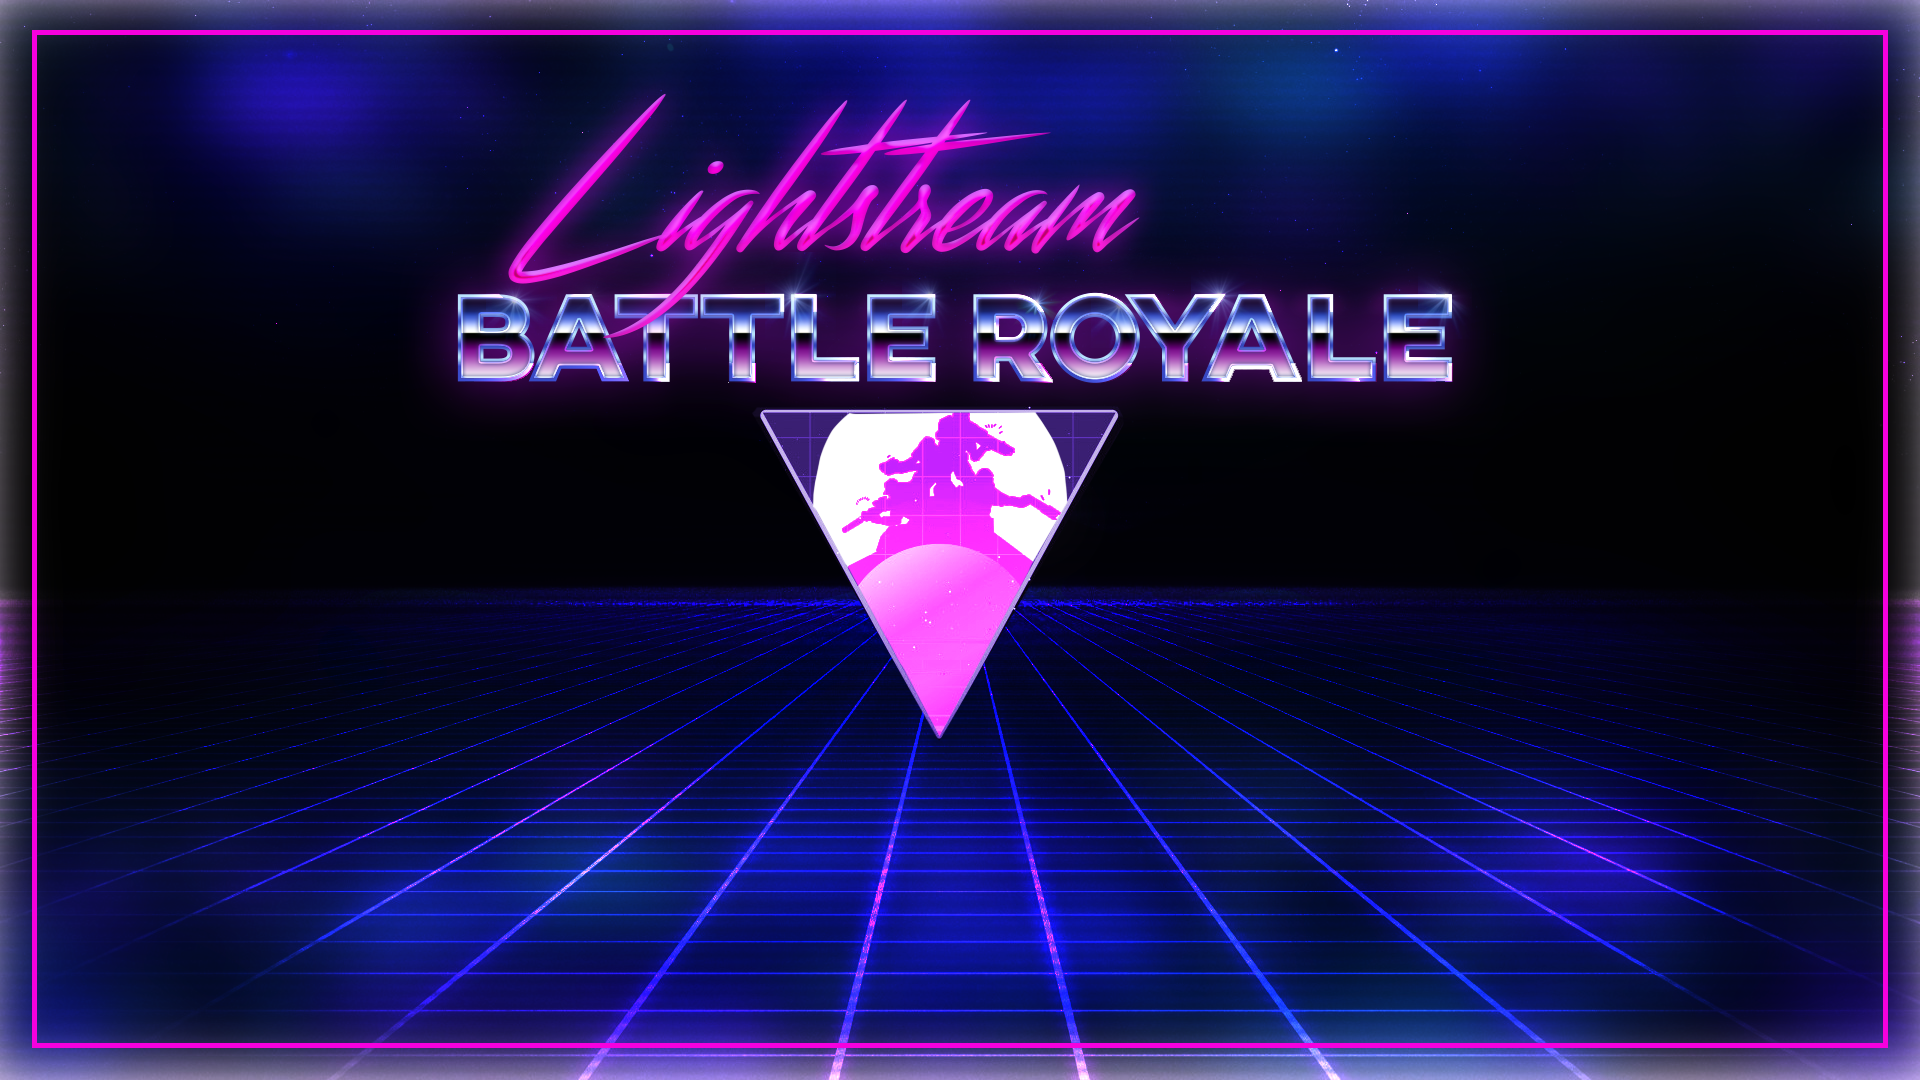 LightStream Battle Royale